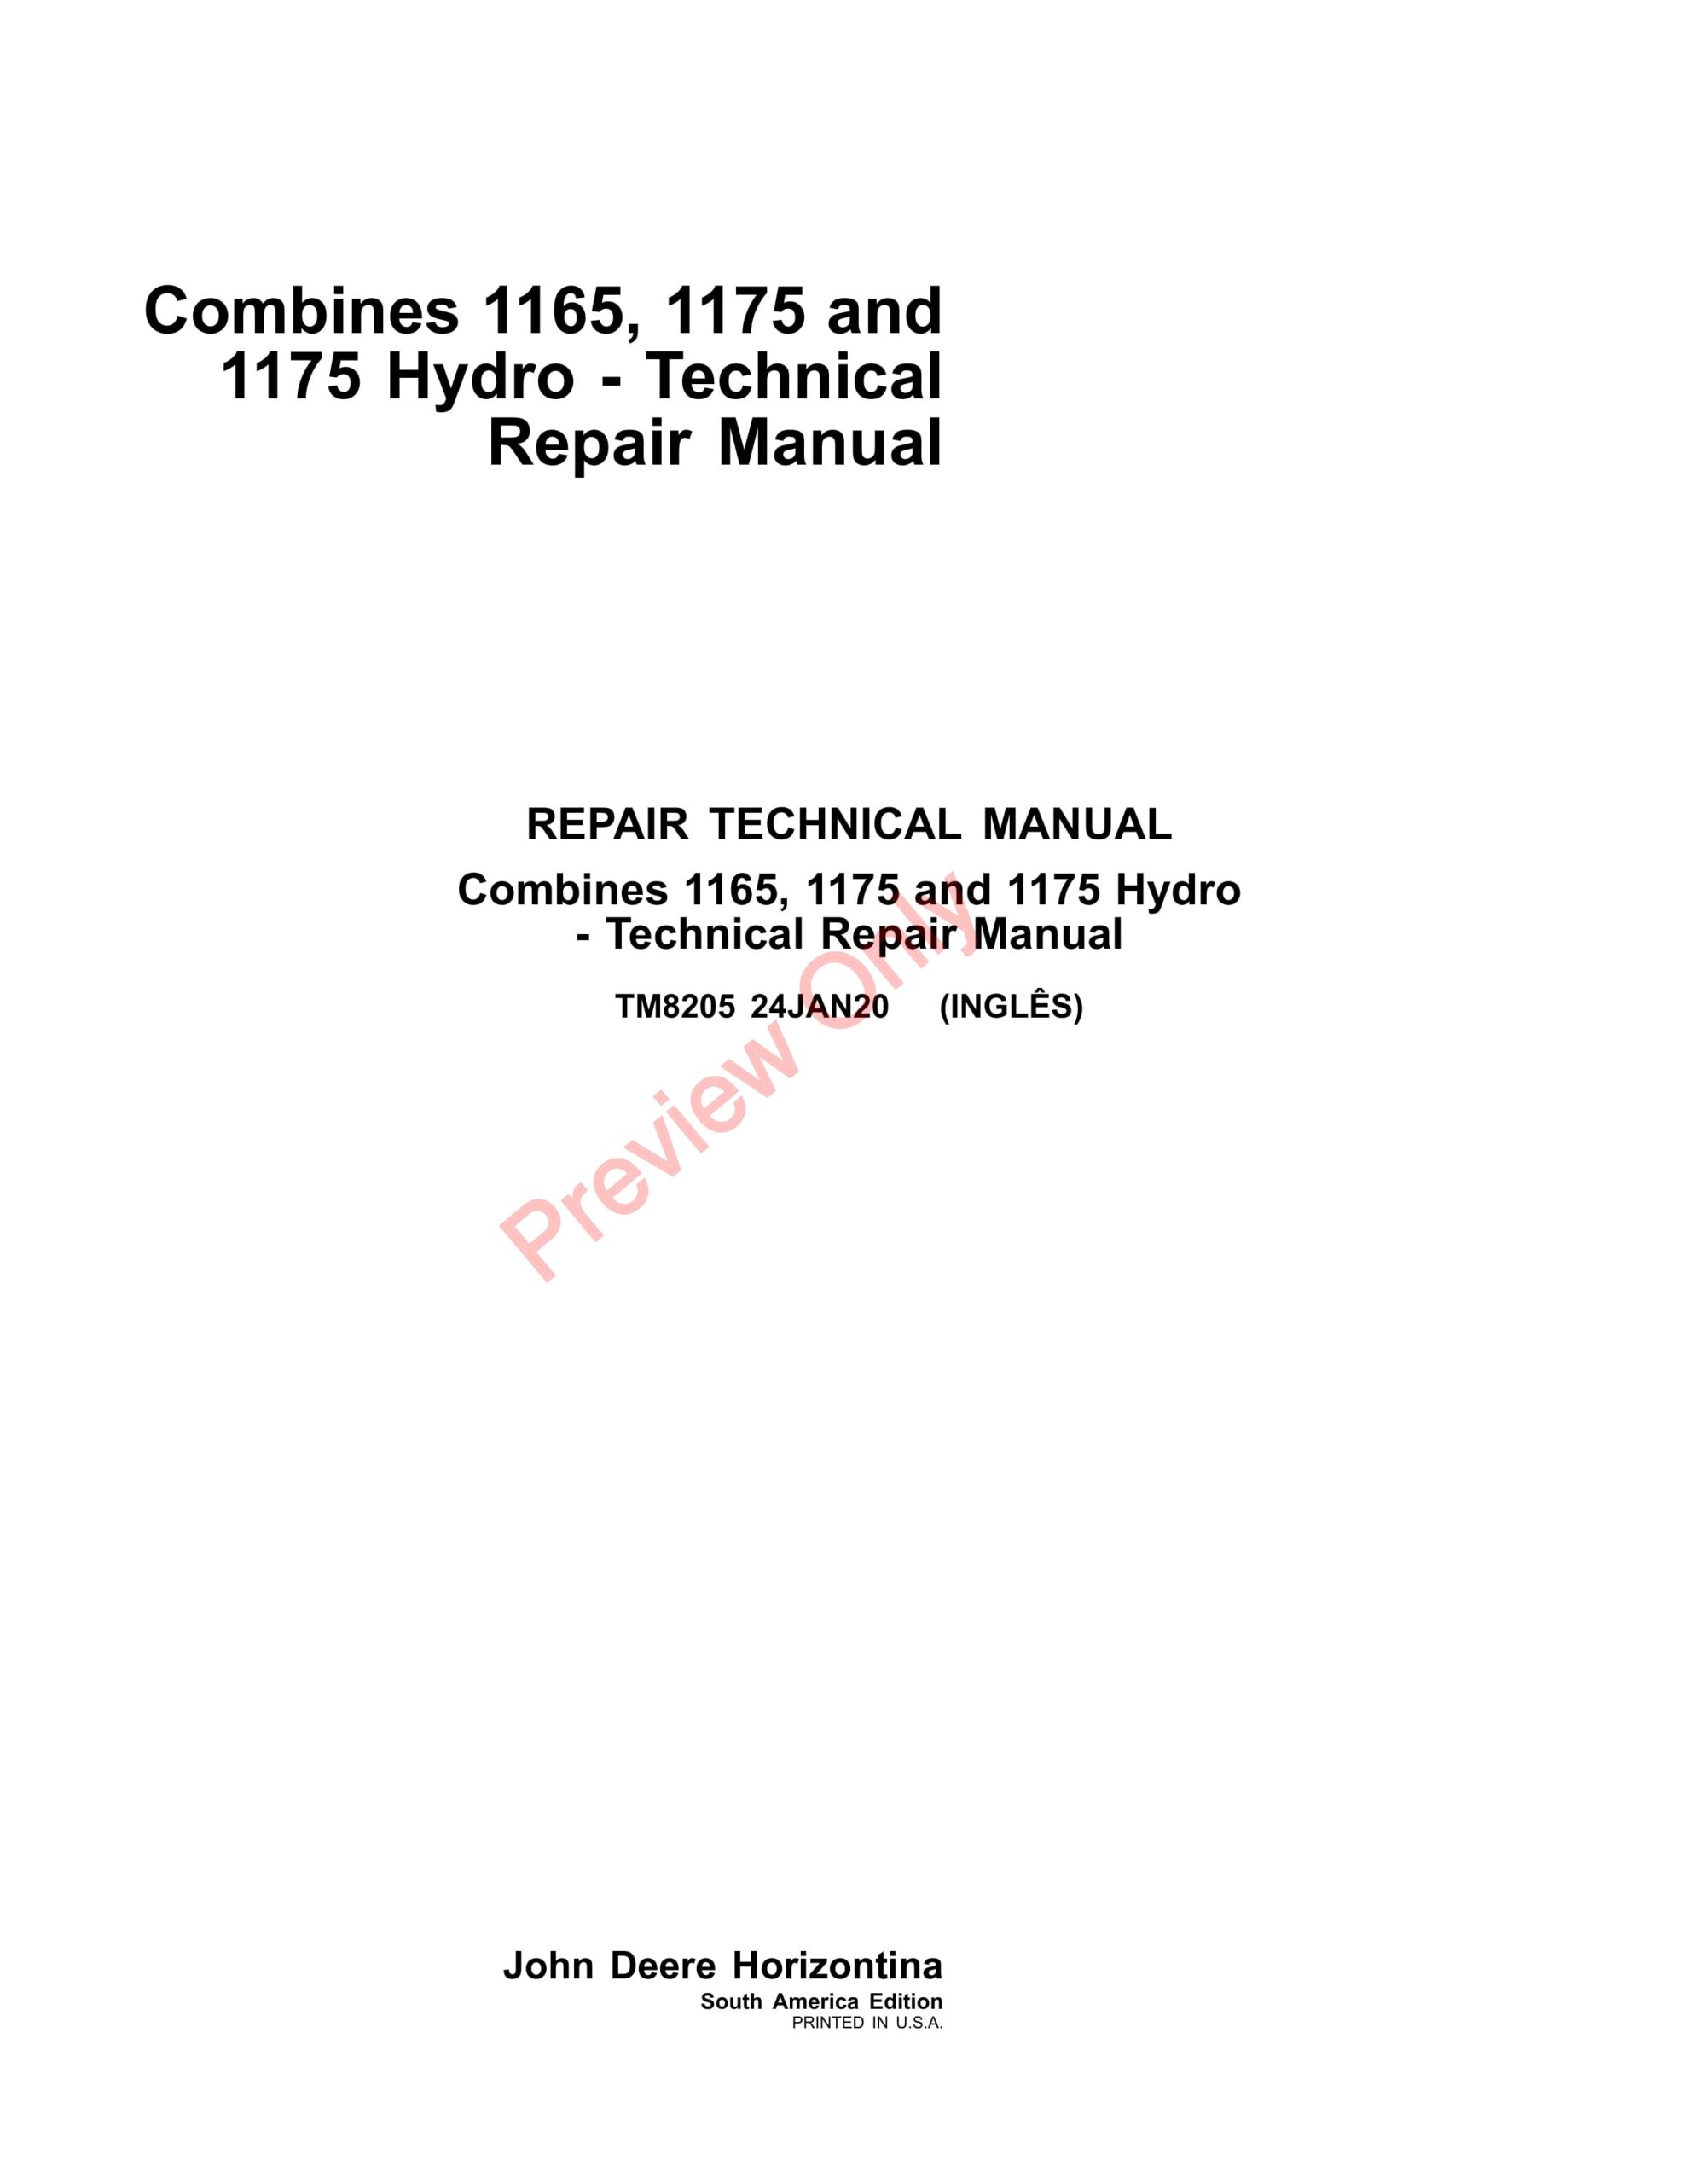 John Deere 1165, 1175 and 1175 Hydro Combines Repair Technical Manual TM8205 24JAN20-1